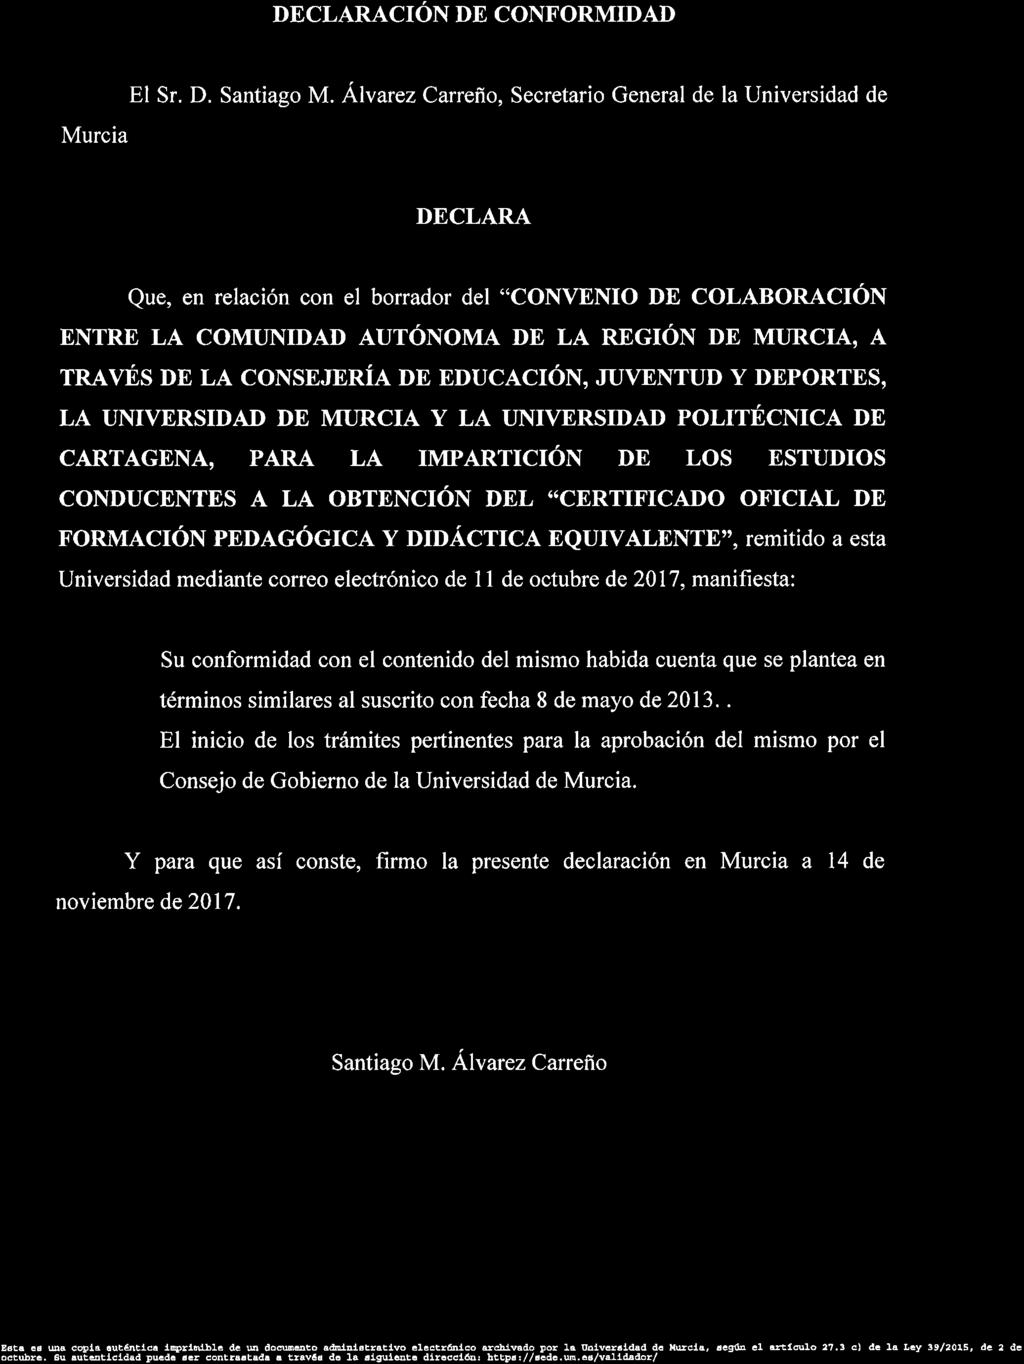 UNIVERSIDAD DE MURCIA Secretaría GeneraI q!g F z DECLARACIÓN DE CONFORMIDAD El Sr. D. Santiag M.